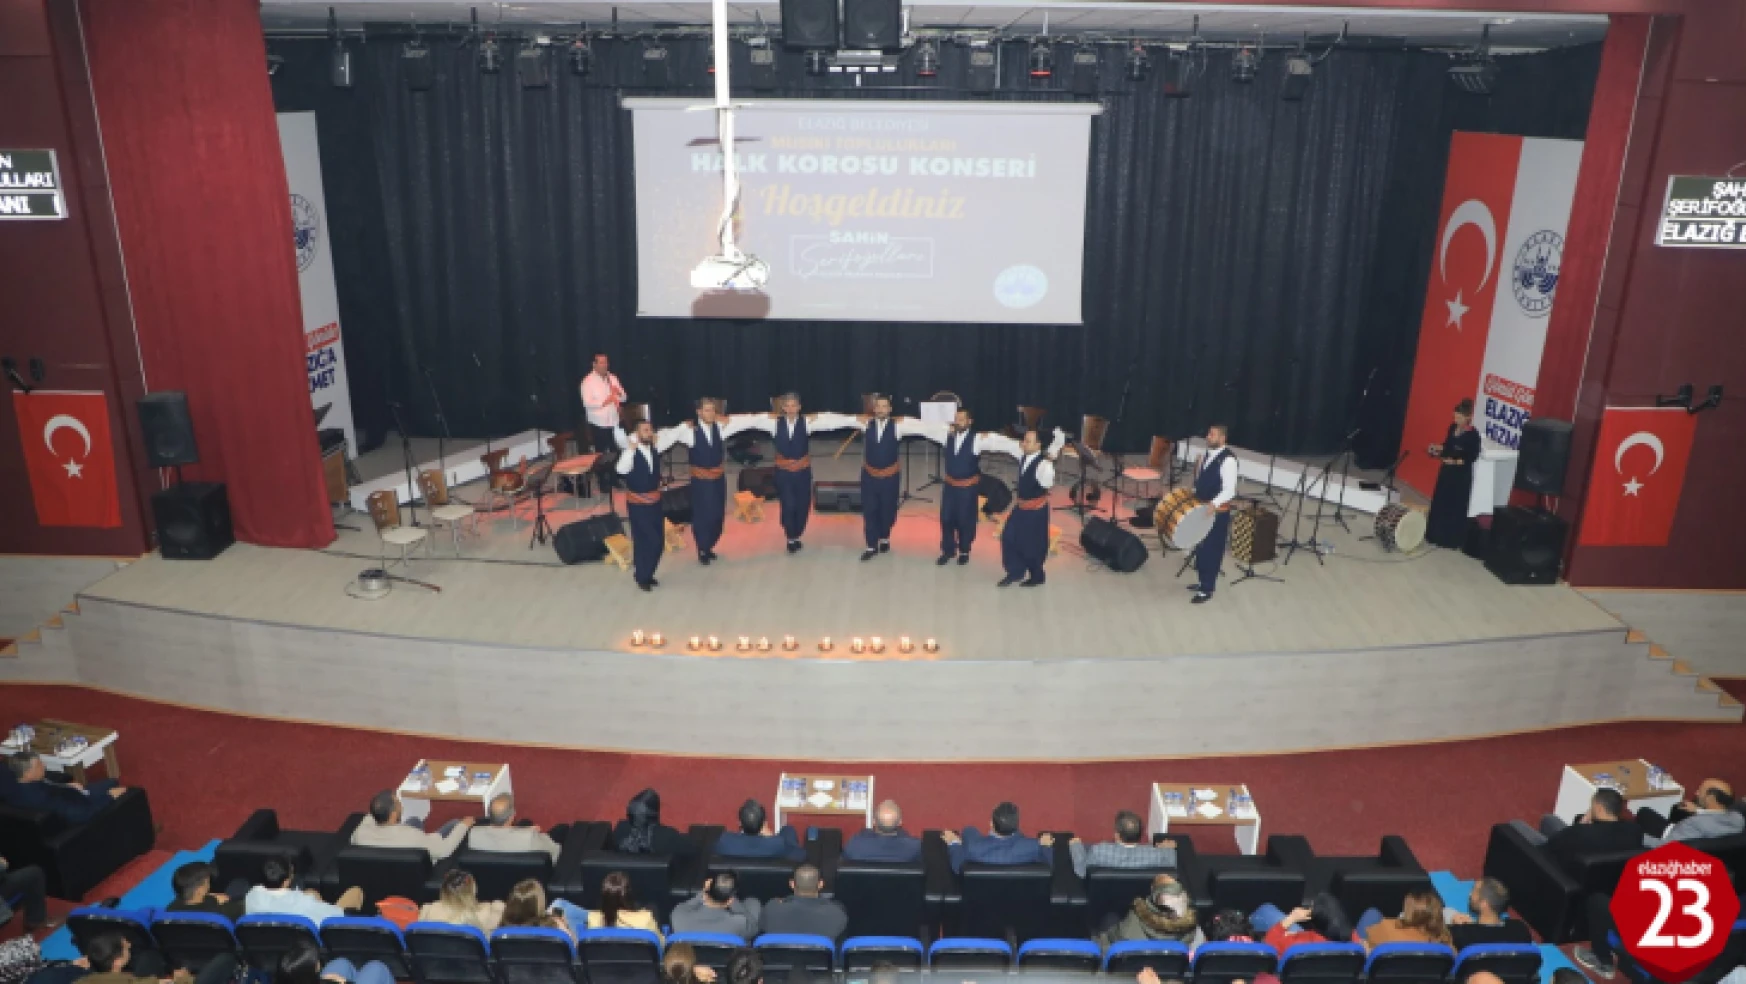 Elazığ Belediyesi Halk Korosu, İlk Konserini Yoğun Katılımla Gerçekleştirildi